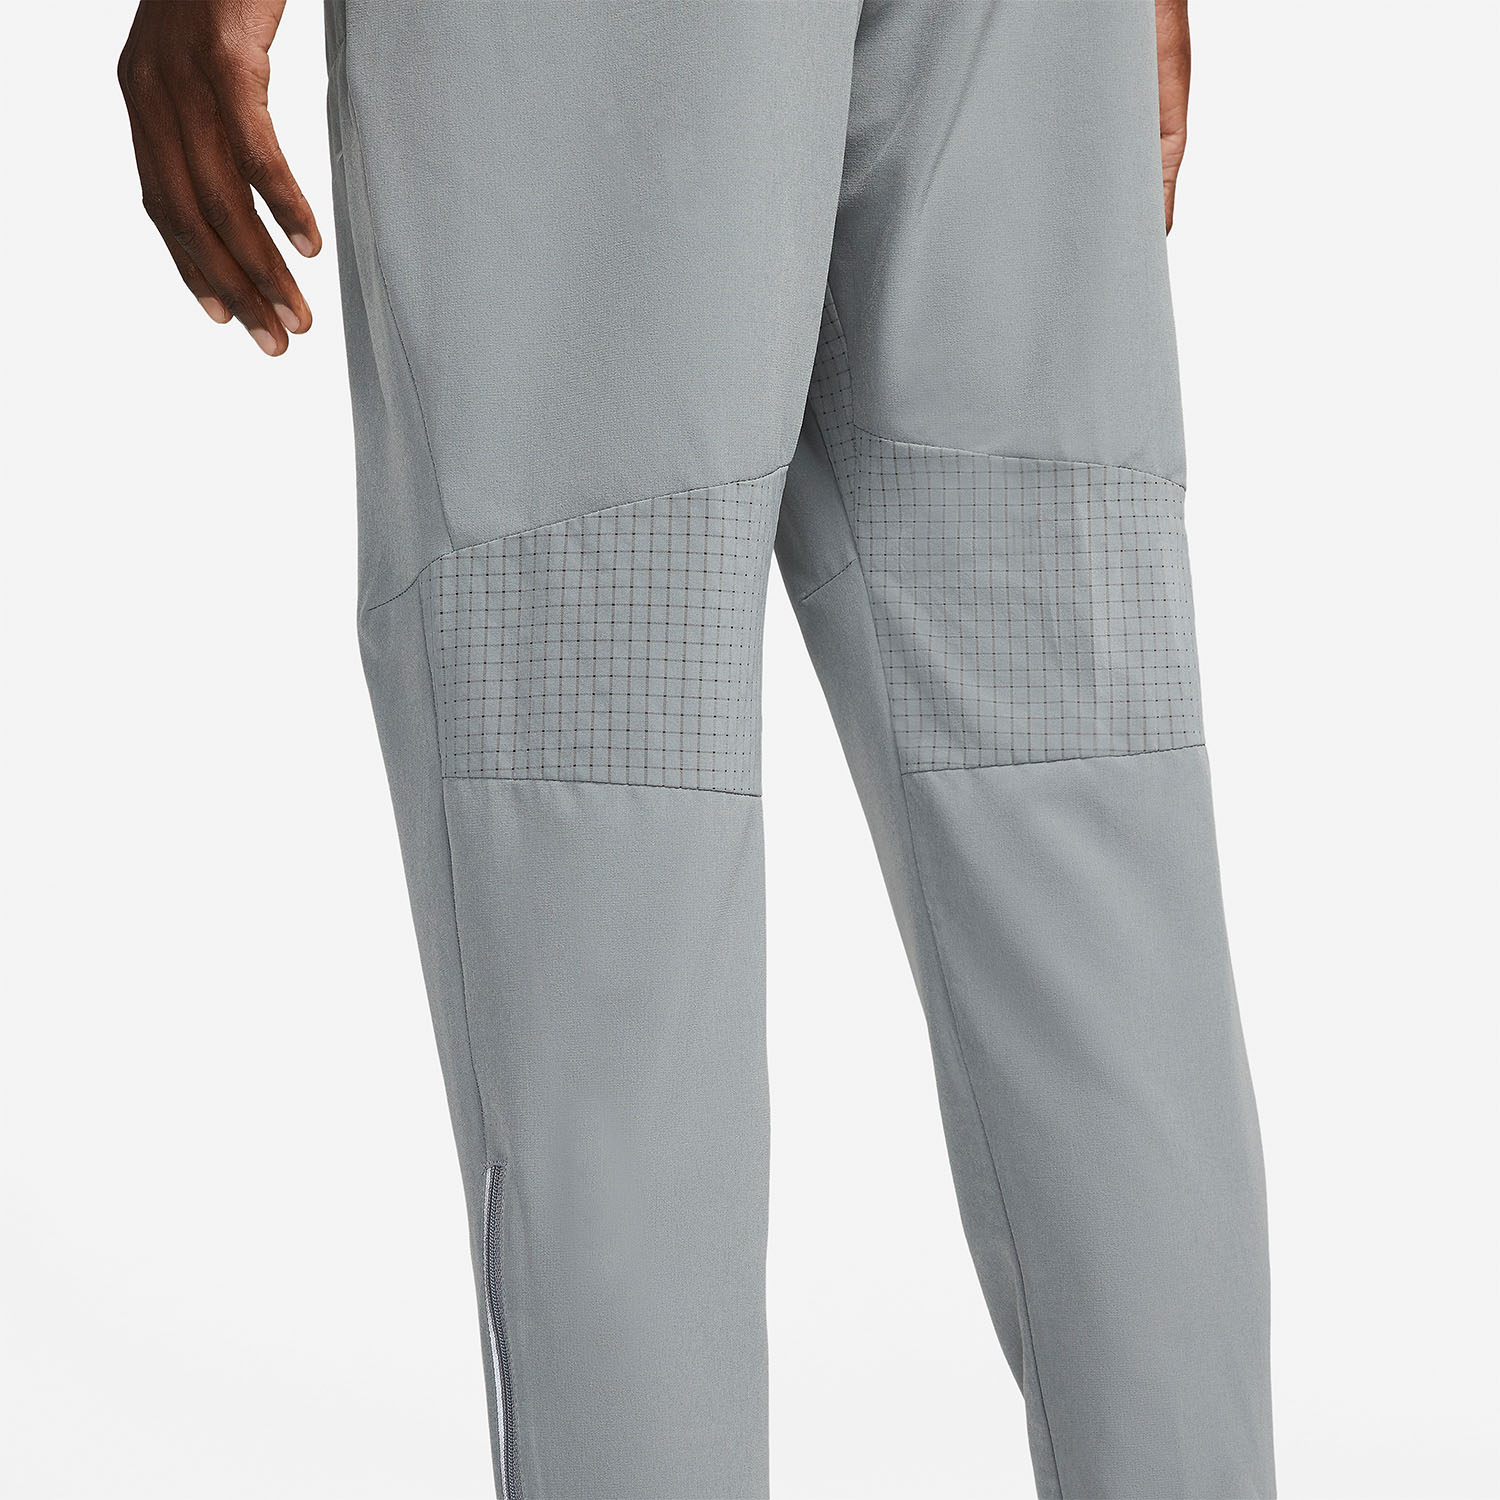 Nike Dri-FIT Phenom Elite Pantaloni - Smoke Grey/Reflective Silver